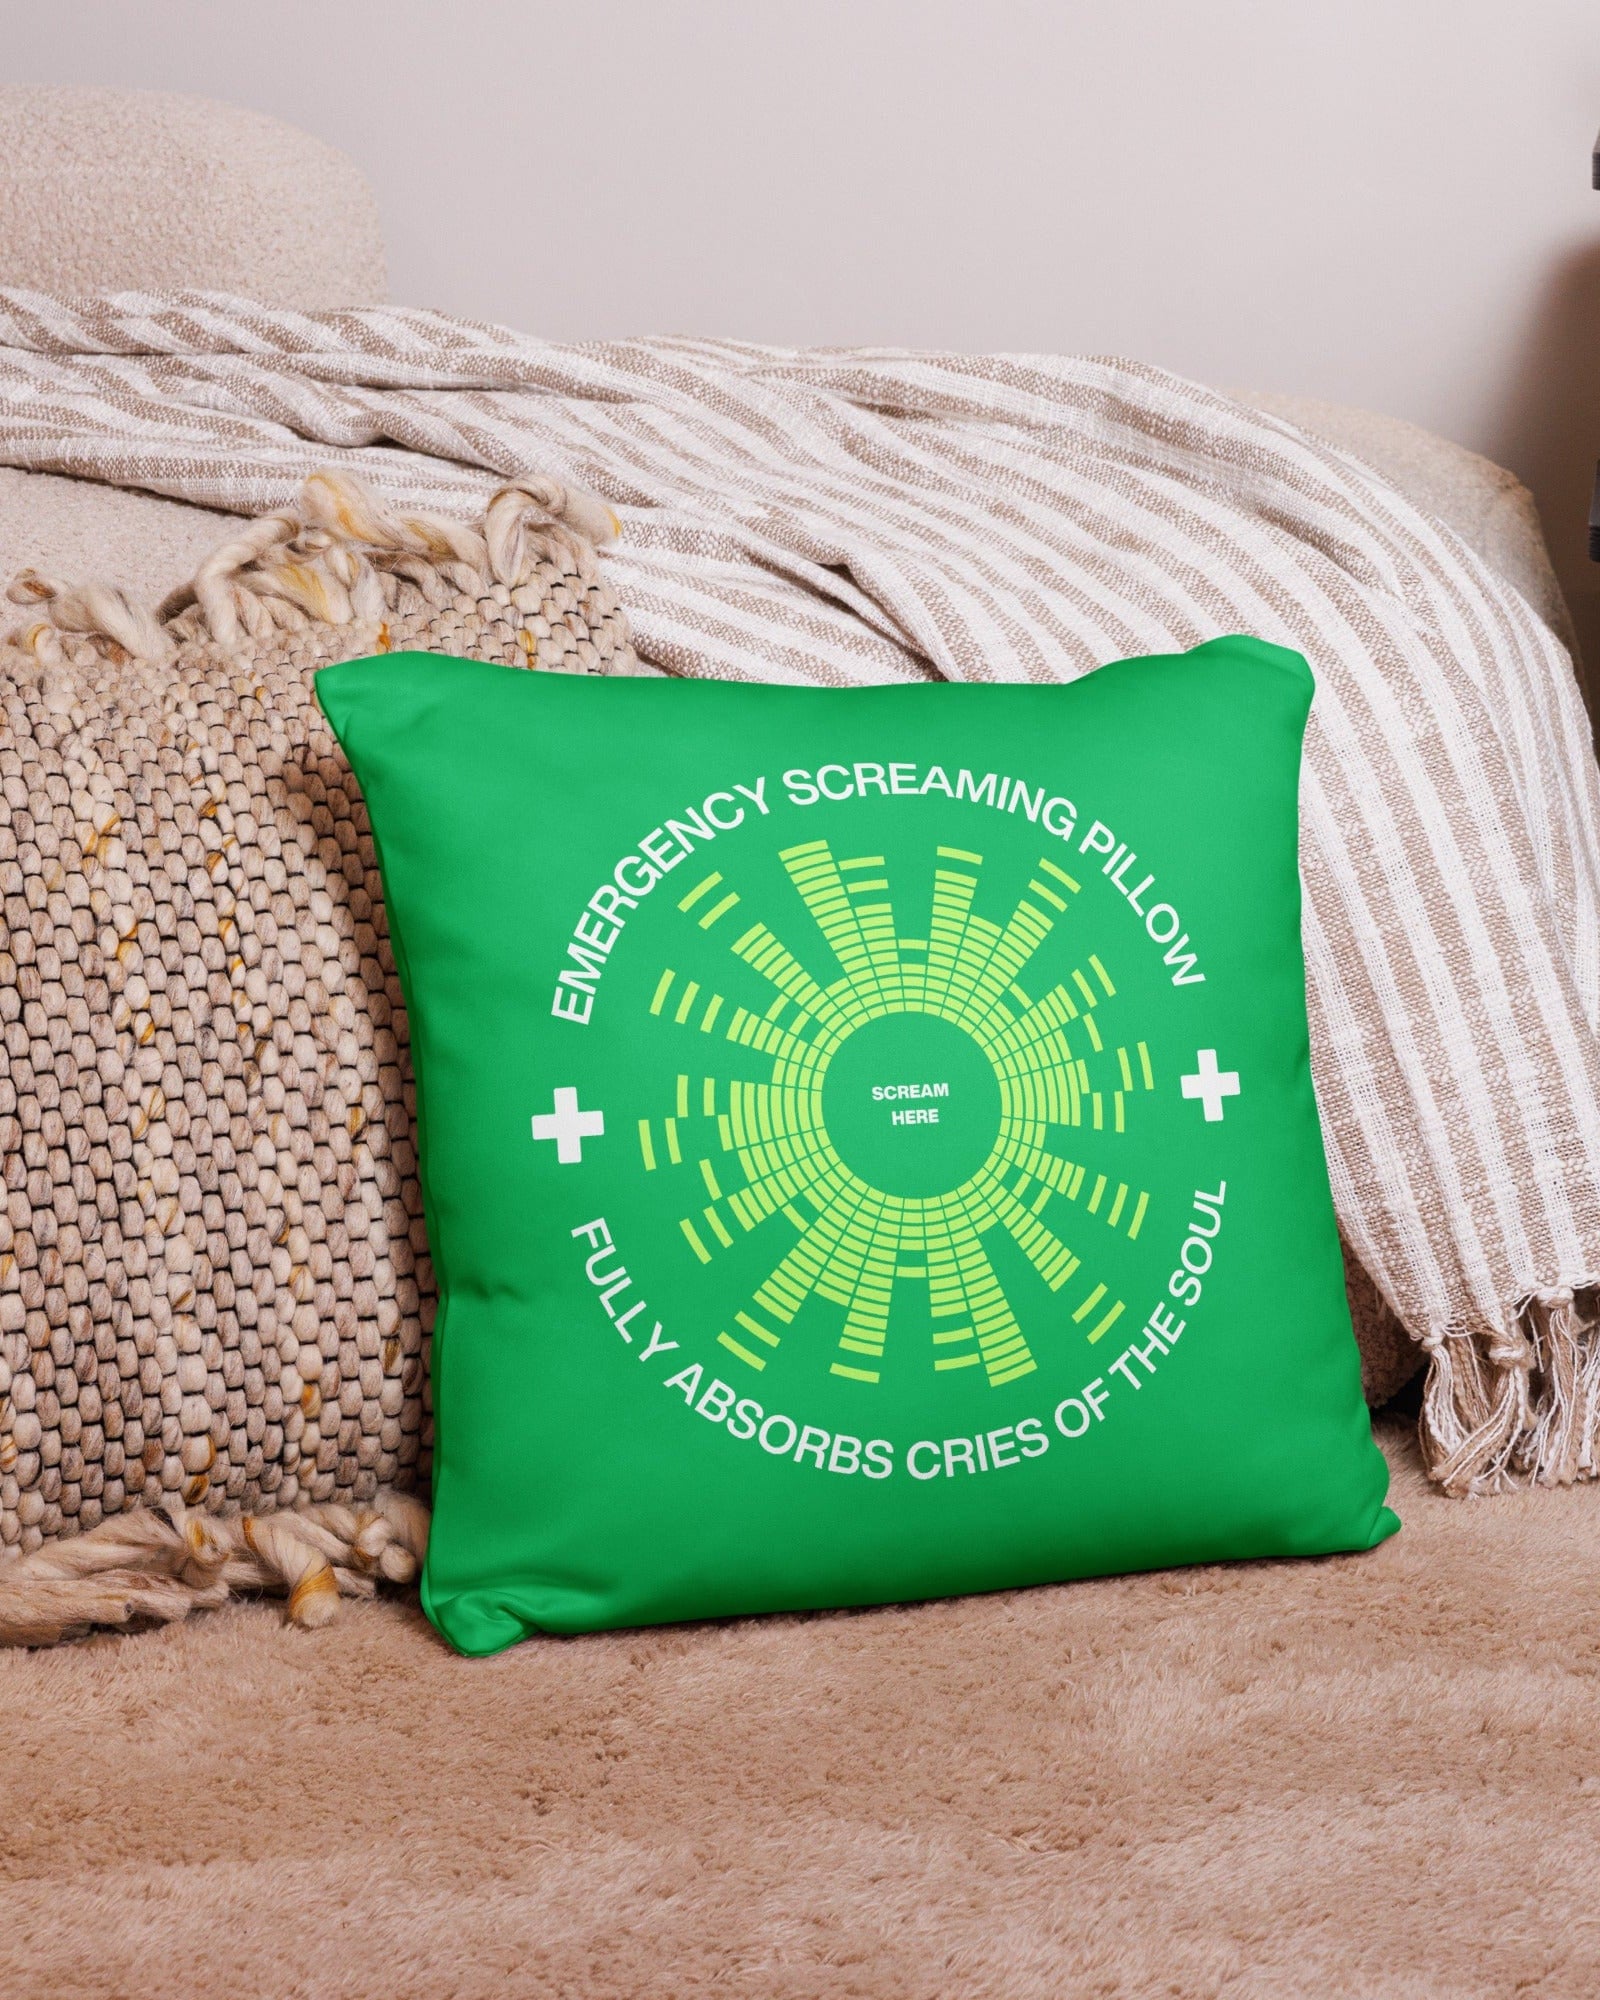 Emergency Screaming Pillow in Smashing Green Pillow Jolly & Goode